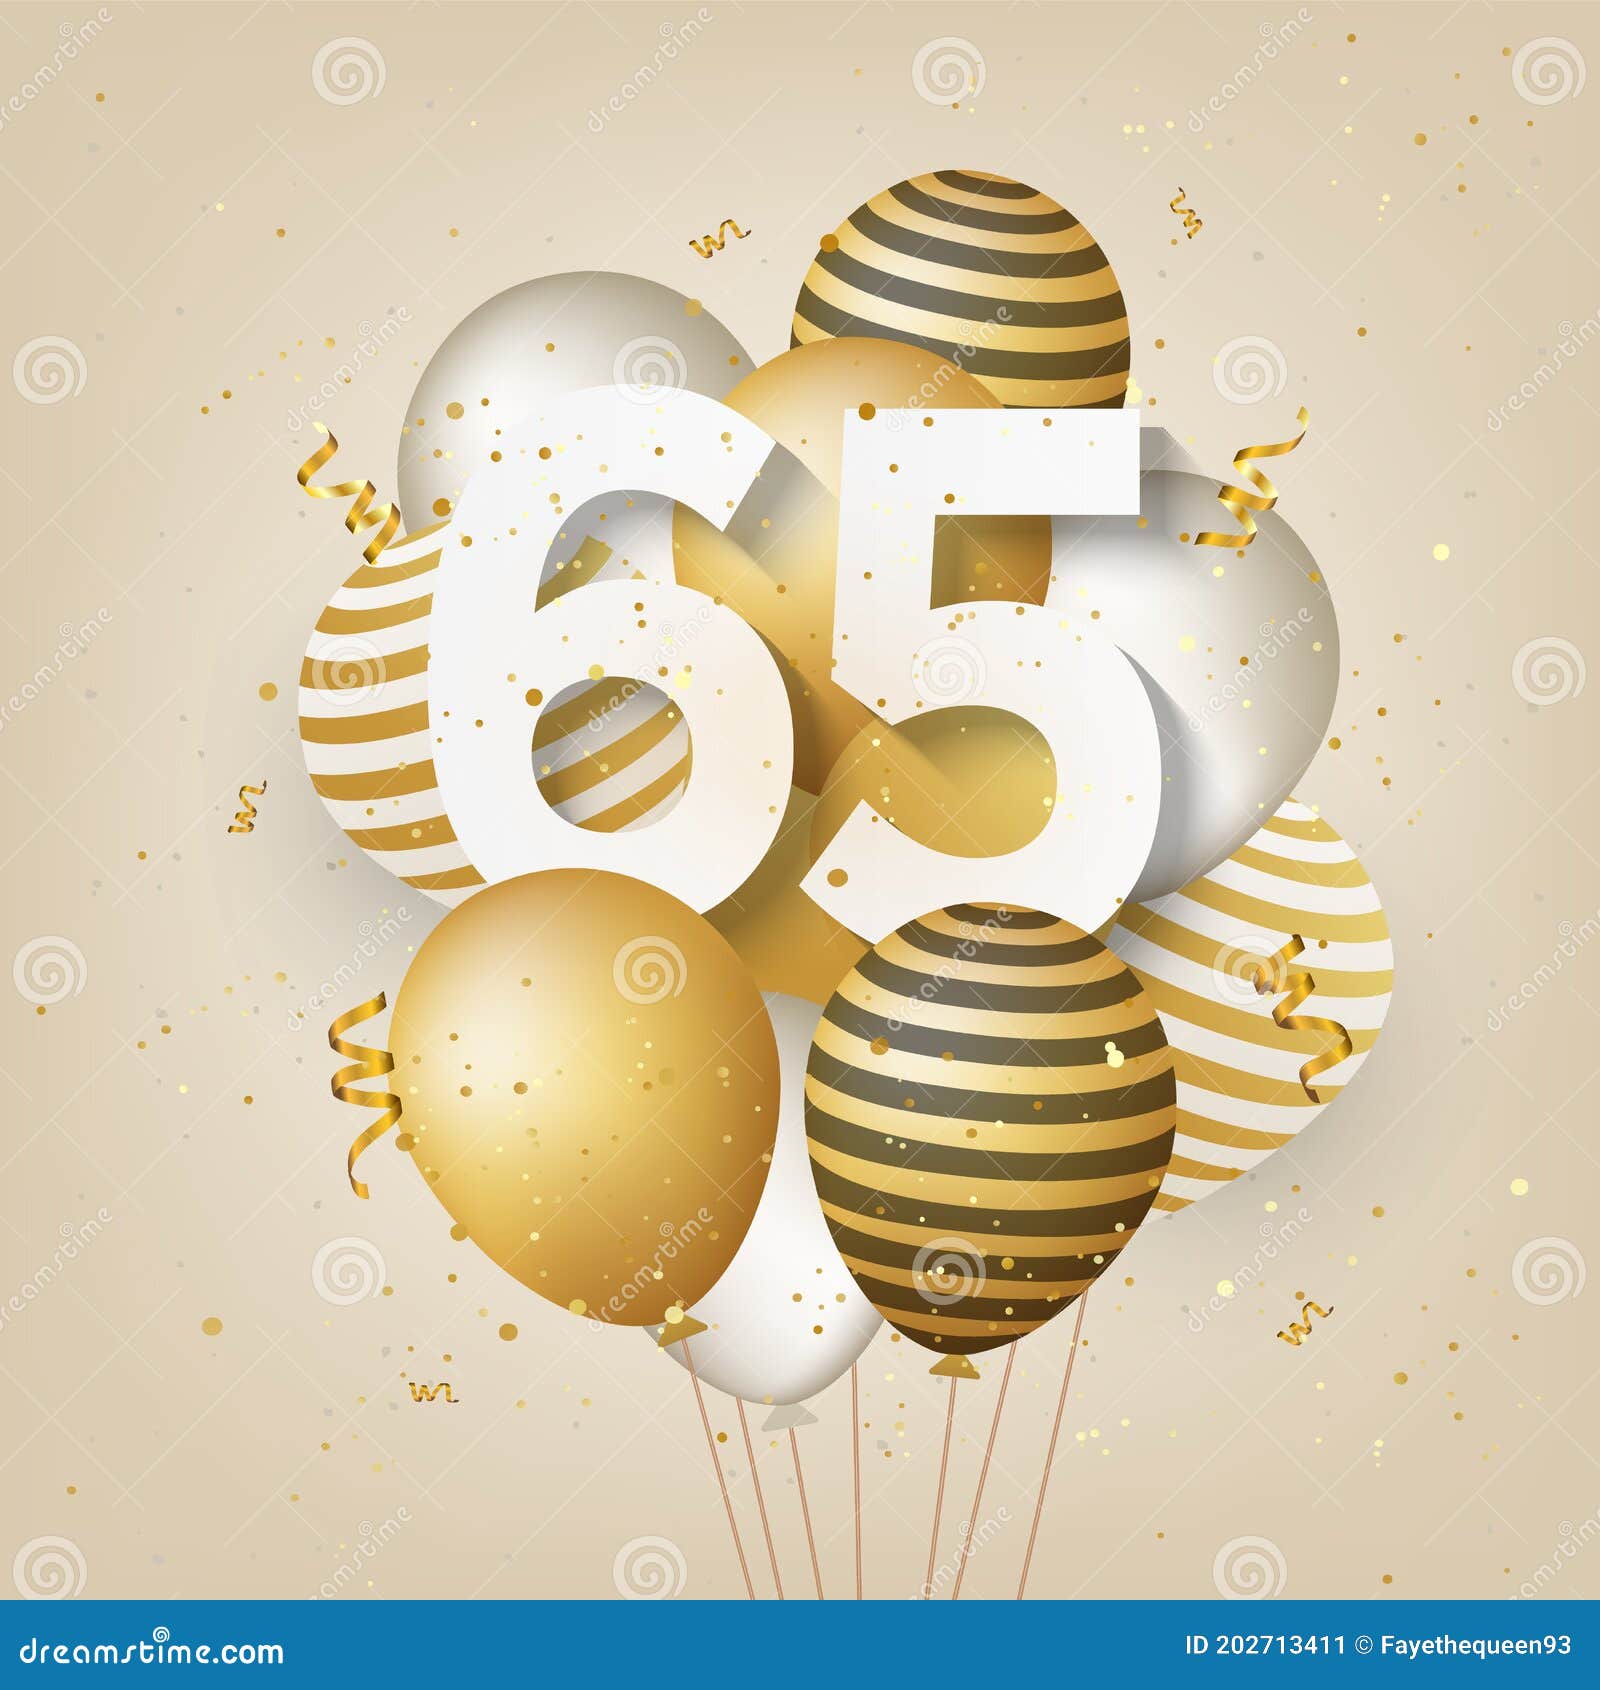 Hôm nay là sinh nhật lần thứ 65 của một người đặc biệt! Hãy cùng nhau chúc mừng và đón xem hình ảnh về bữa tiệc sinh nhật ấm cúng với những câu chúc tốt đẹp dành tặng người đó.